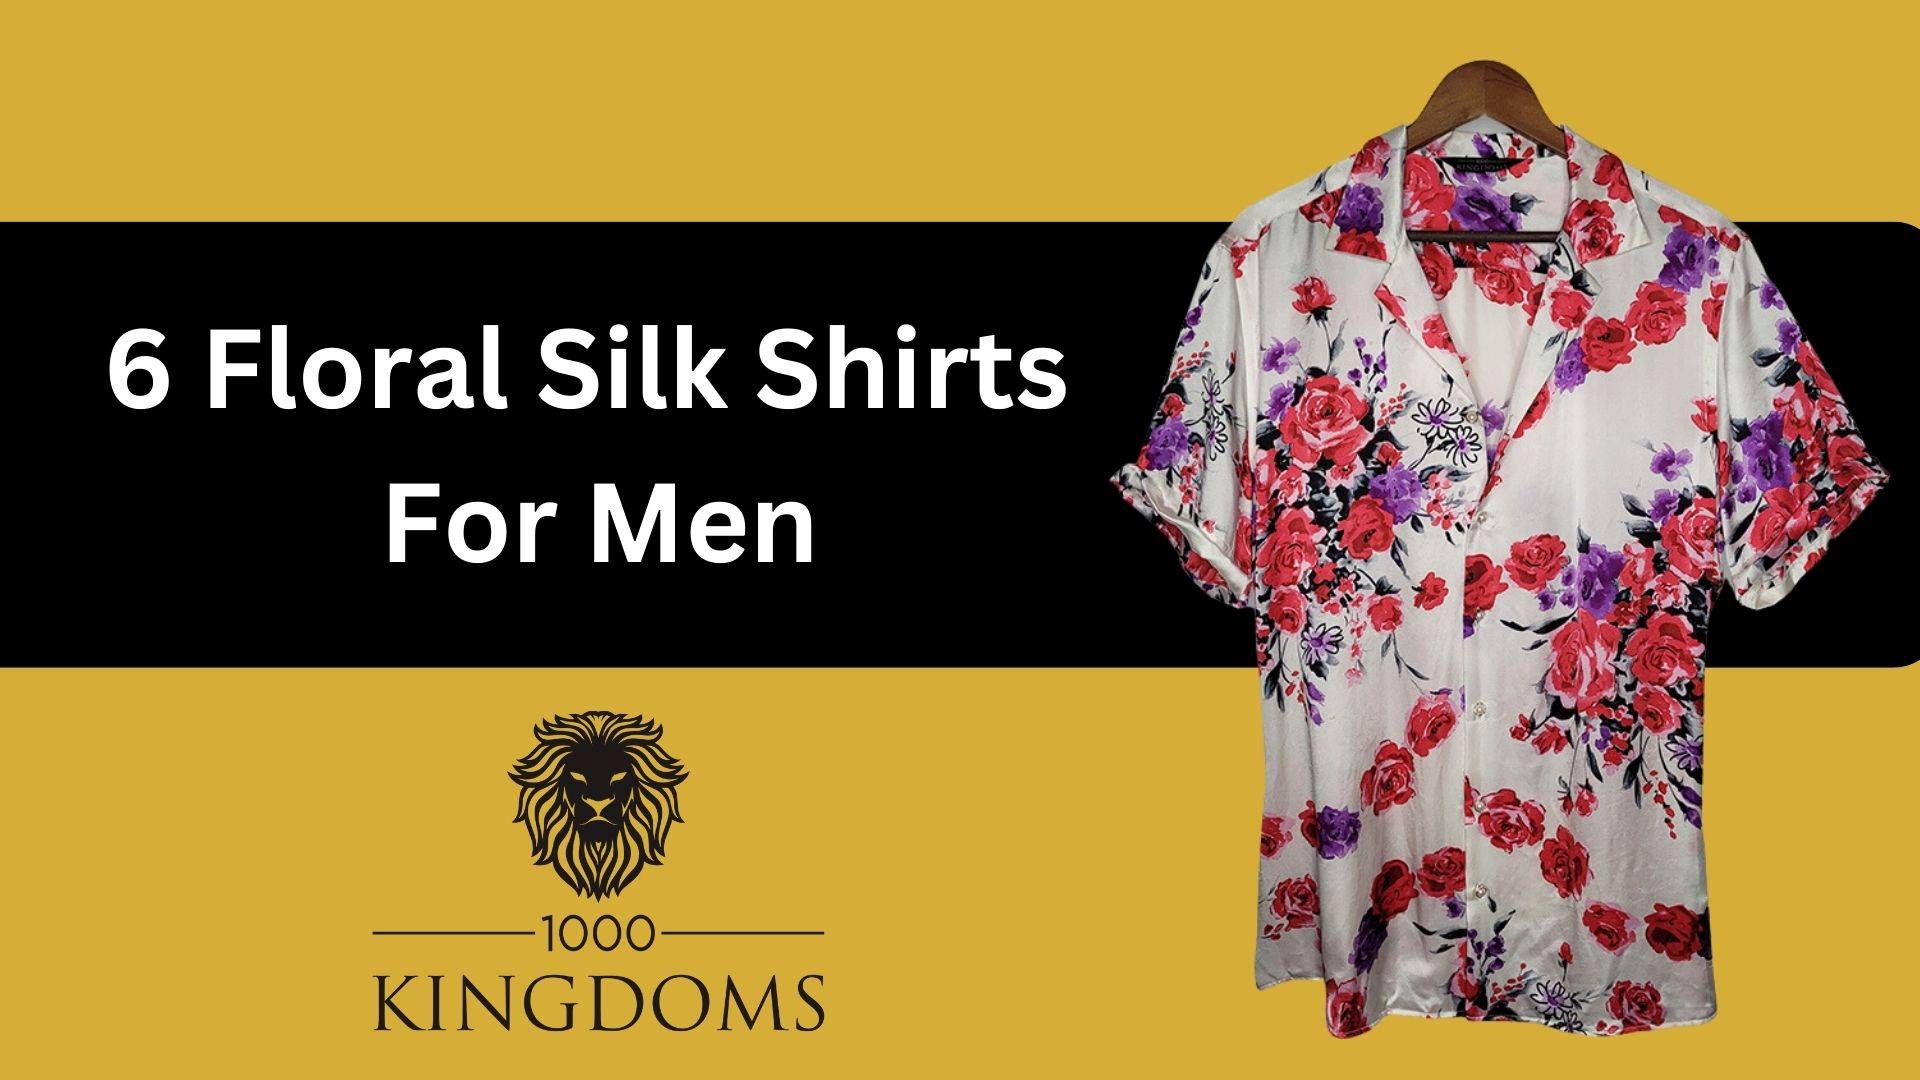 6 floral silk shirts for men header image 1000 kingdoms